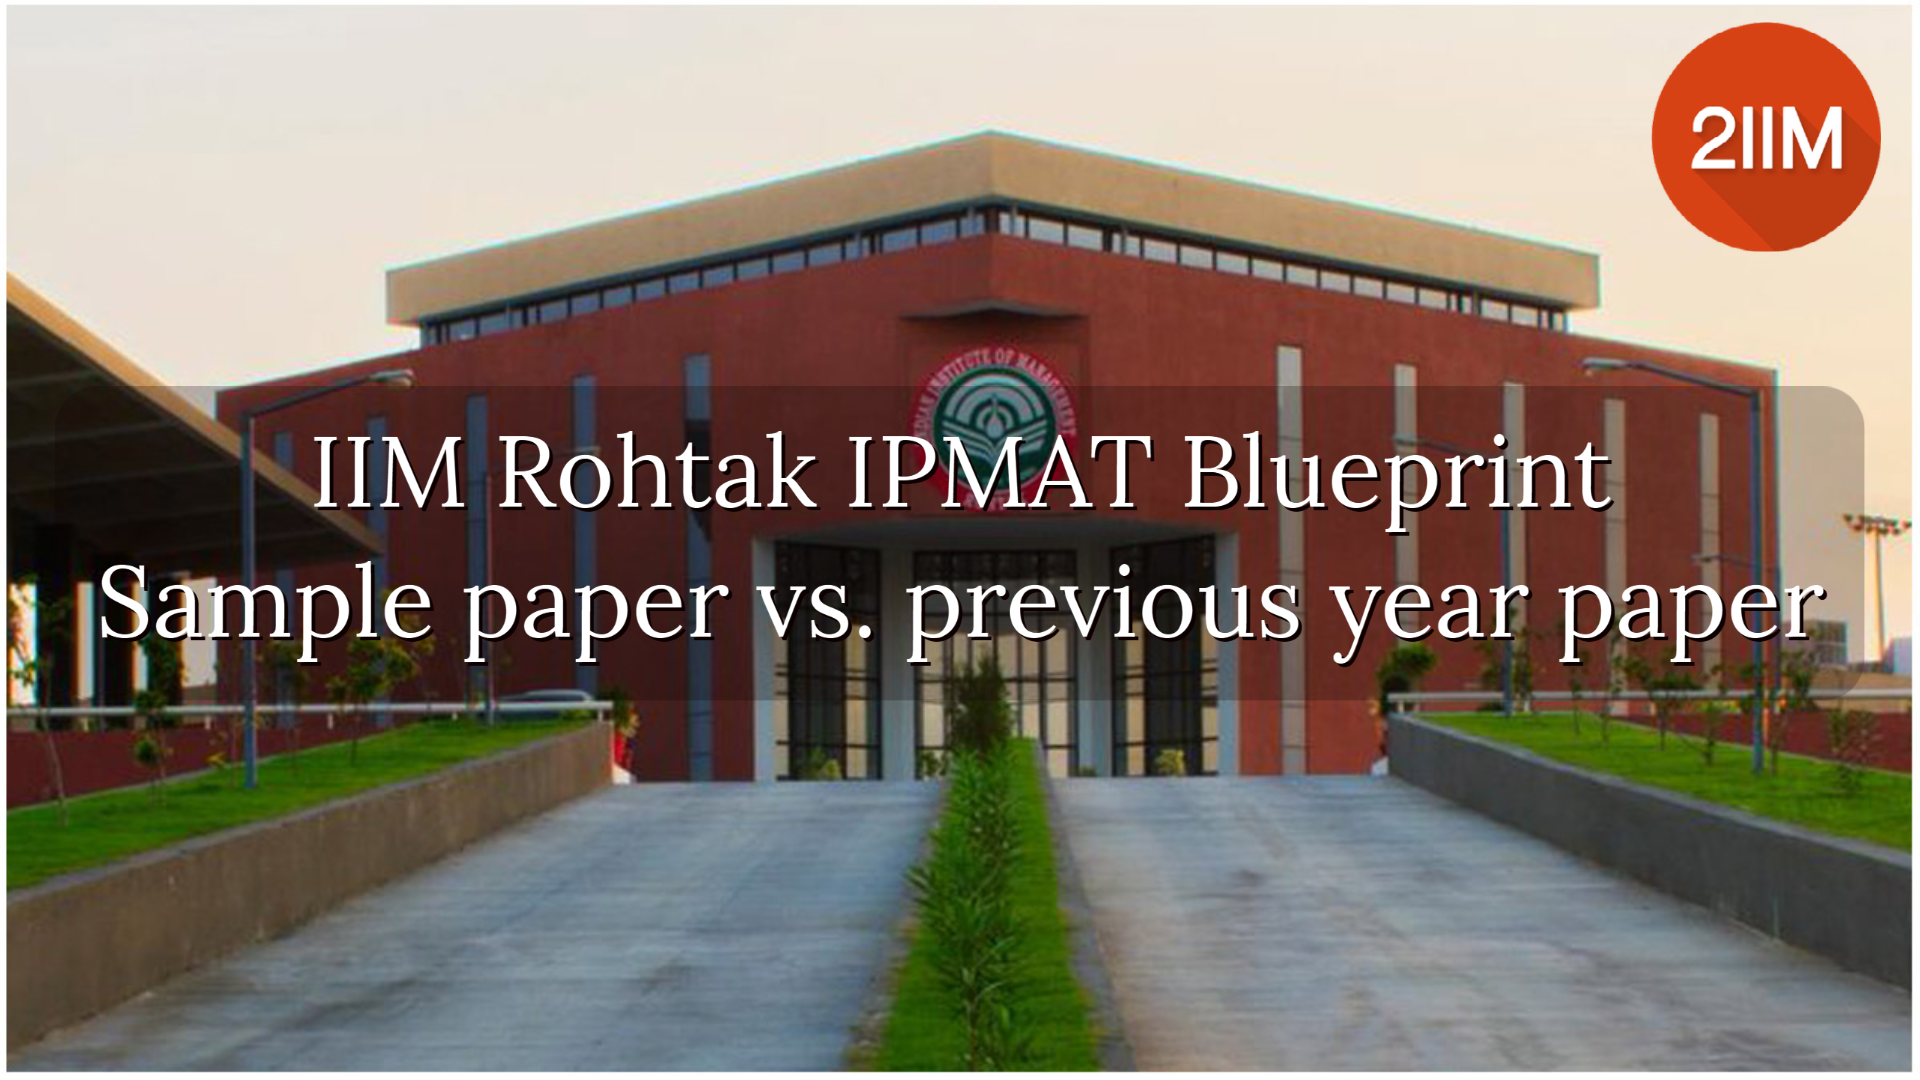 IIM Rohtak IPMAT Blueprint: Sample paper vs. previous year paper